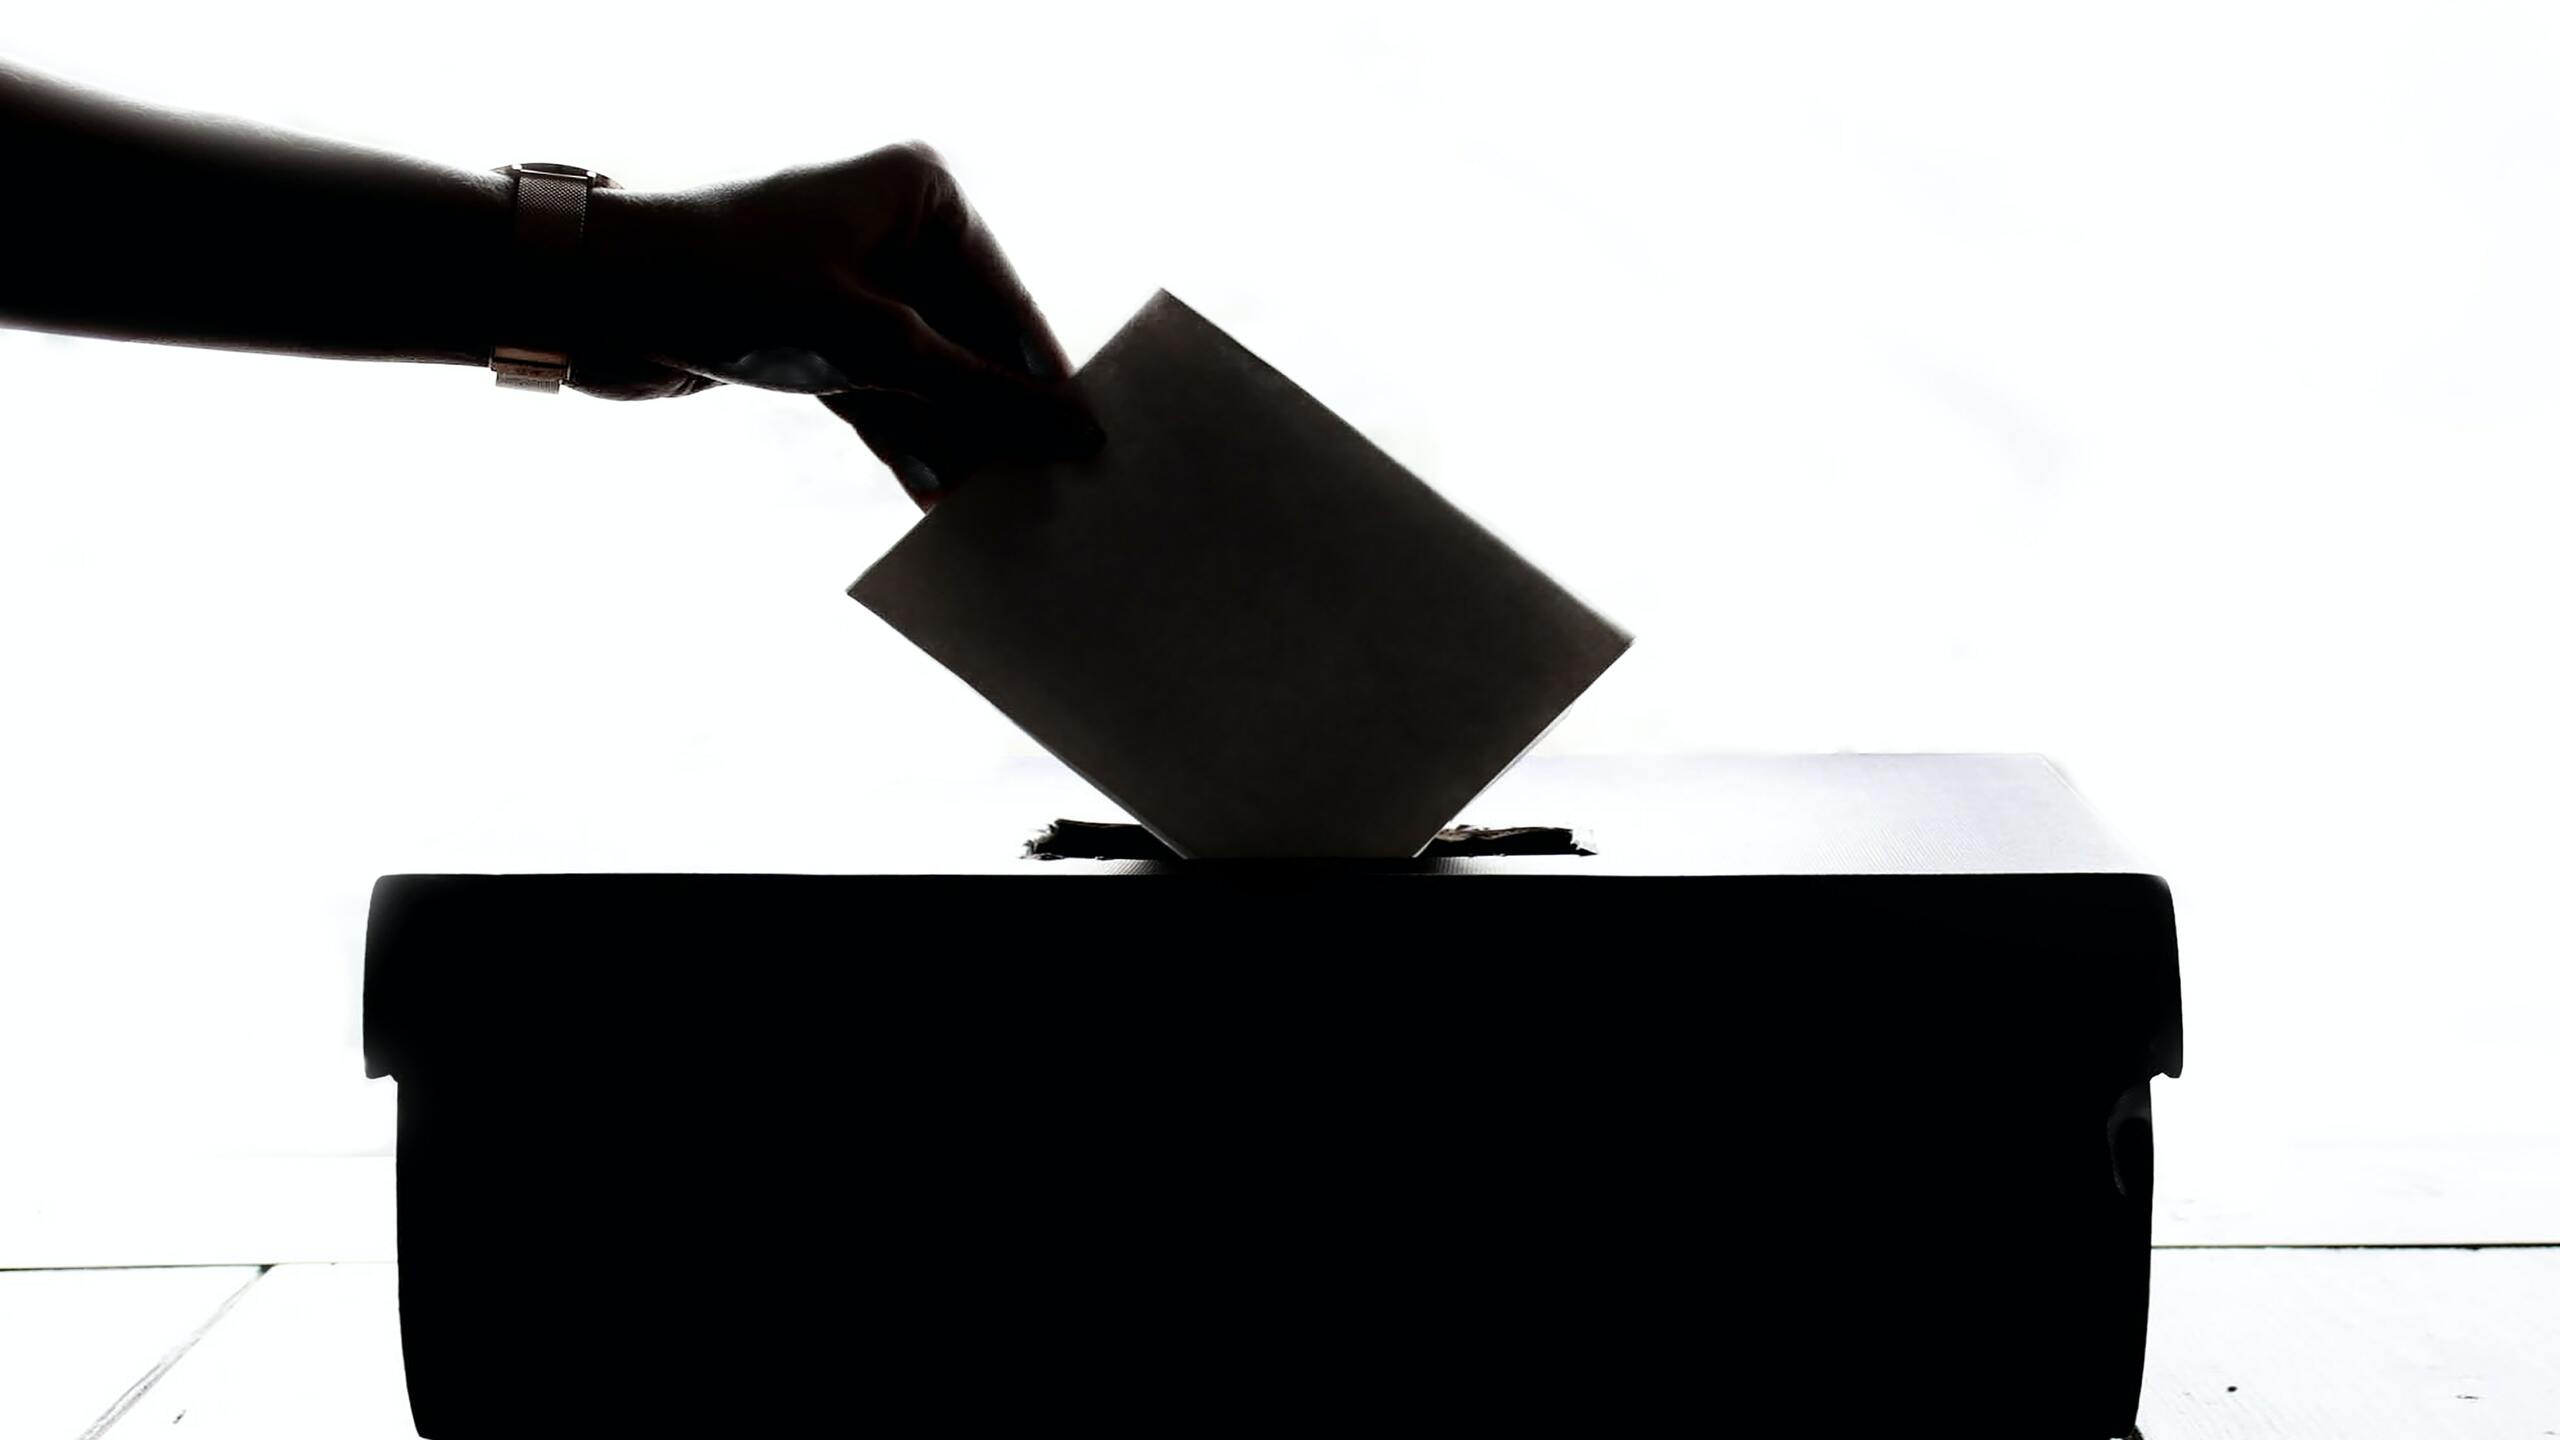 Hand casting a ballot